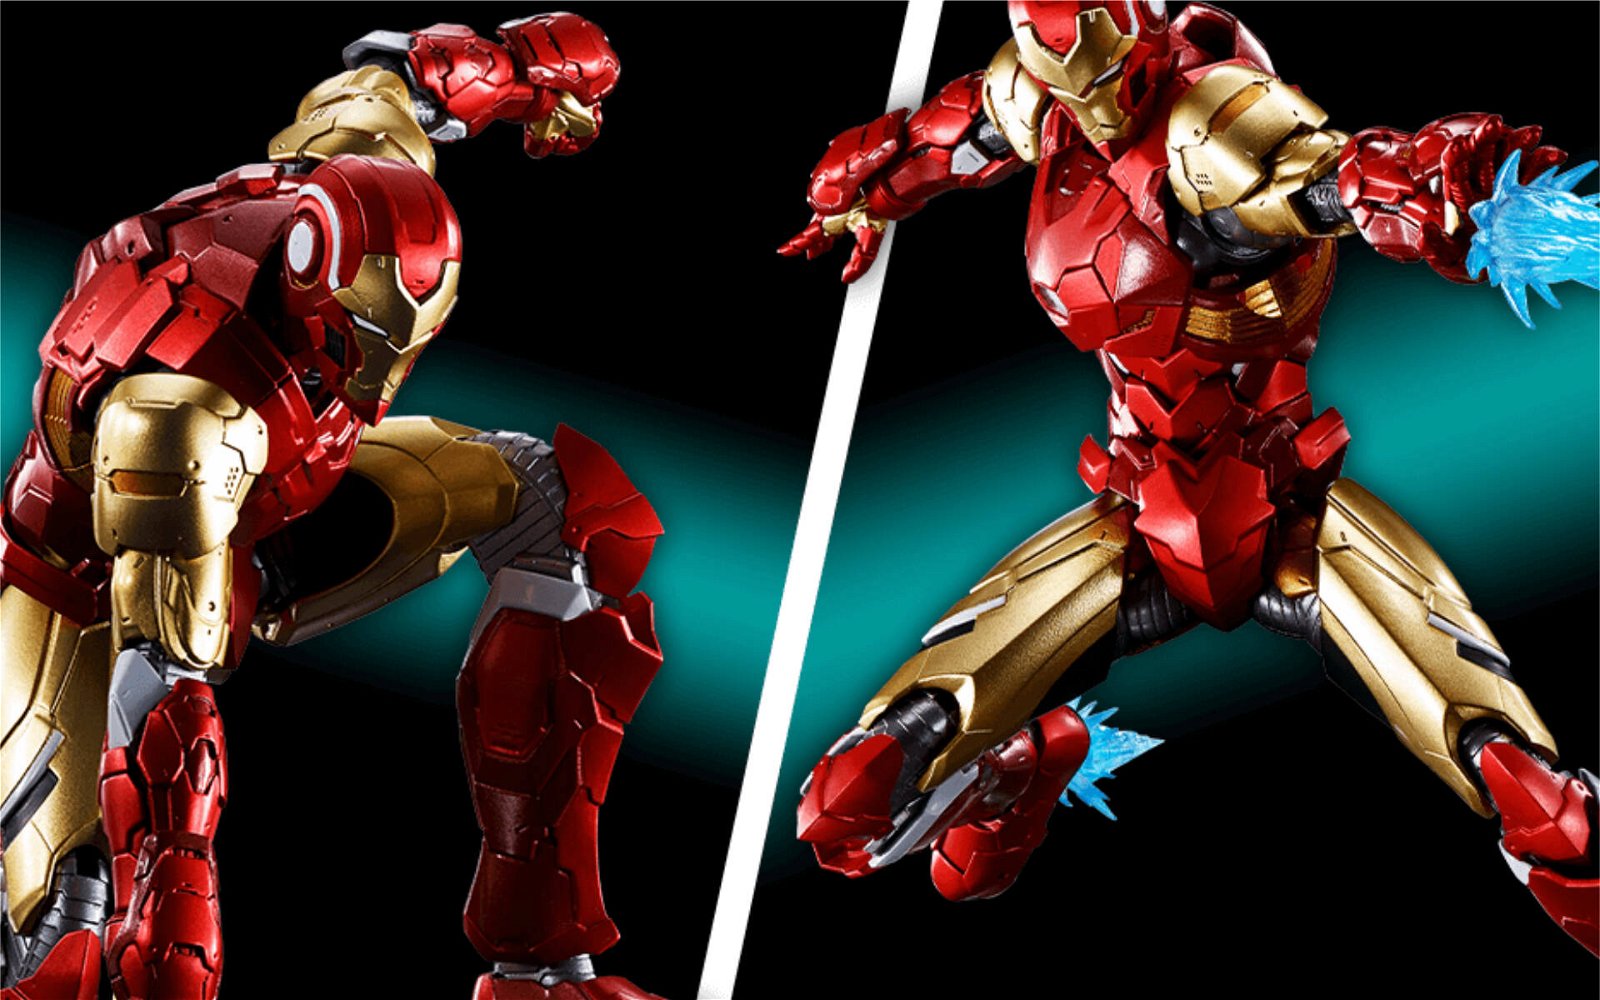 Immagine di Tech-on Avengers, la nuova serie di action figure di Bandai